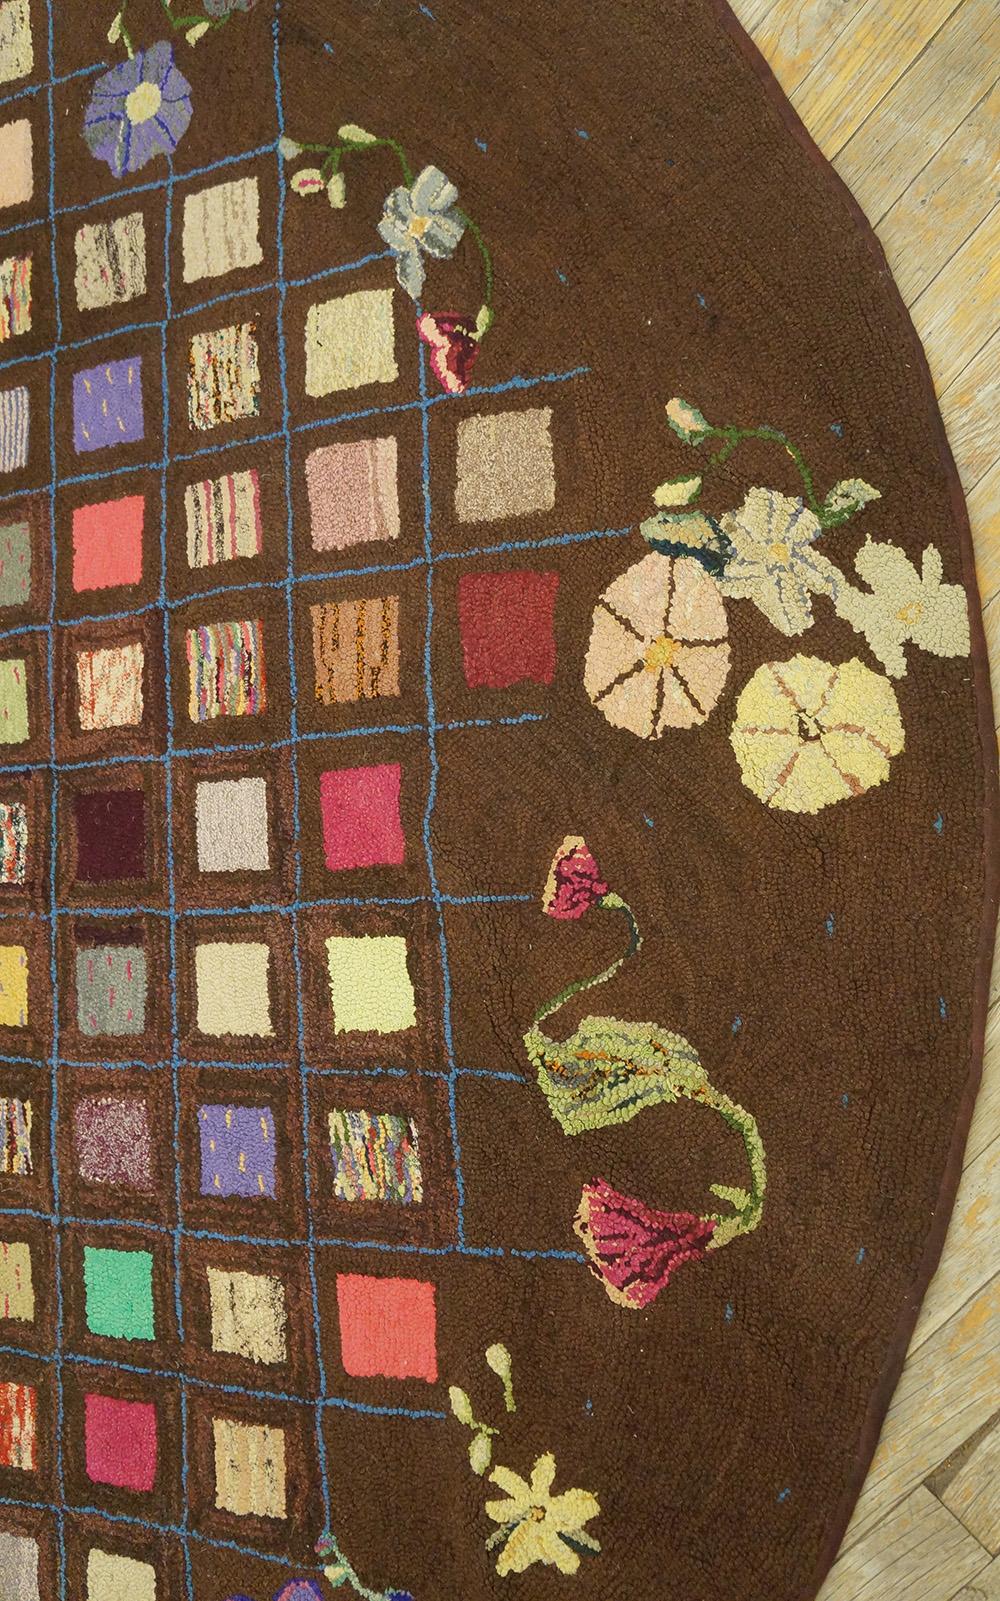 Ovaler amerikanischer Kapuzenteppich des frühen 20. Jahrhunderts ( 7'8